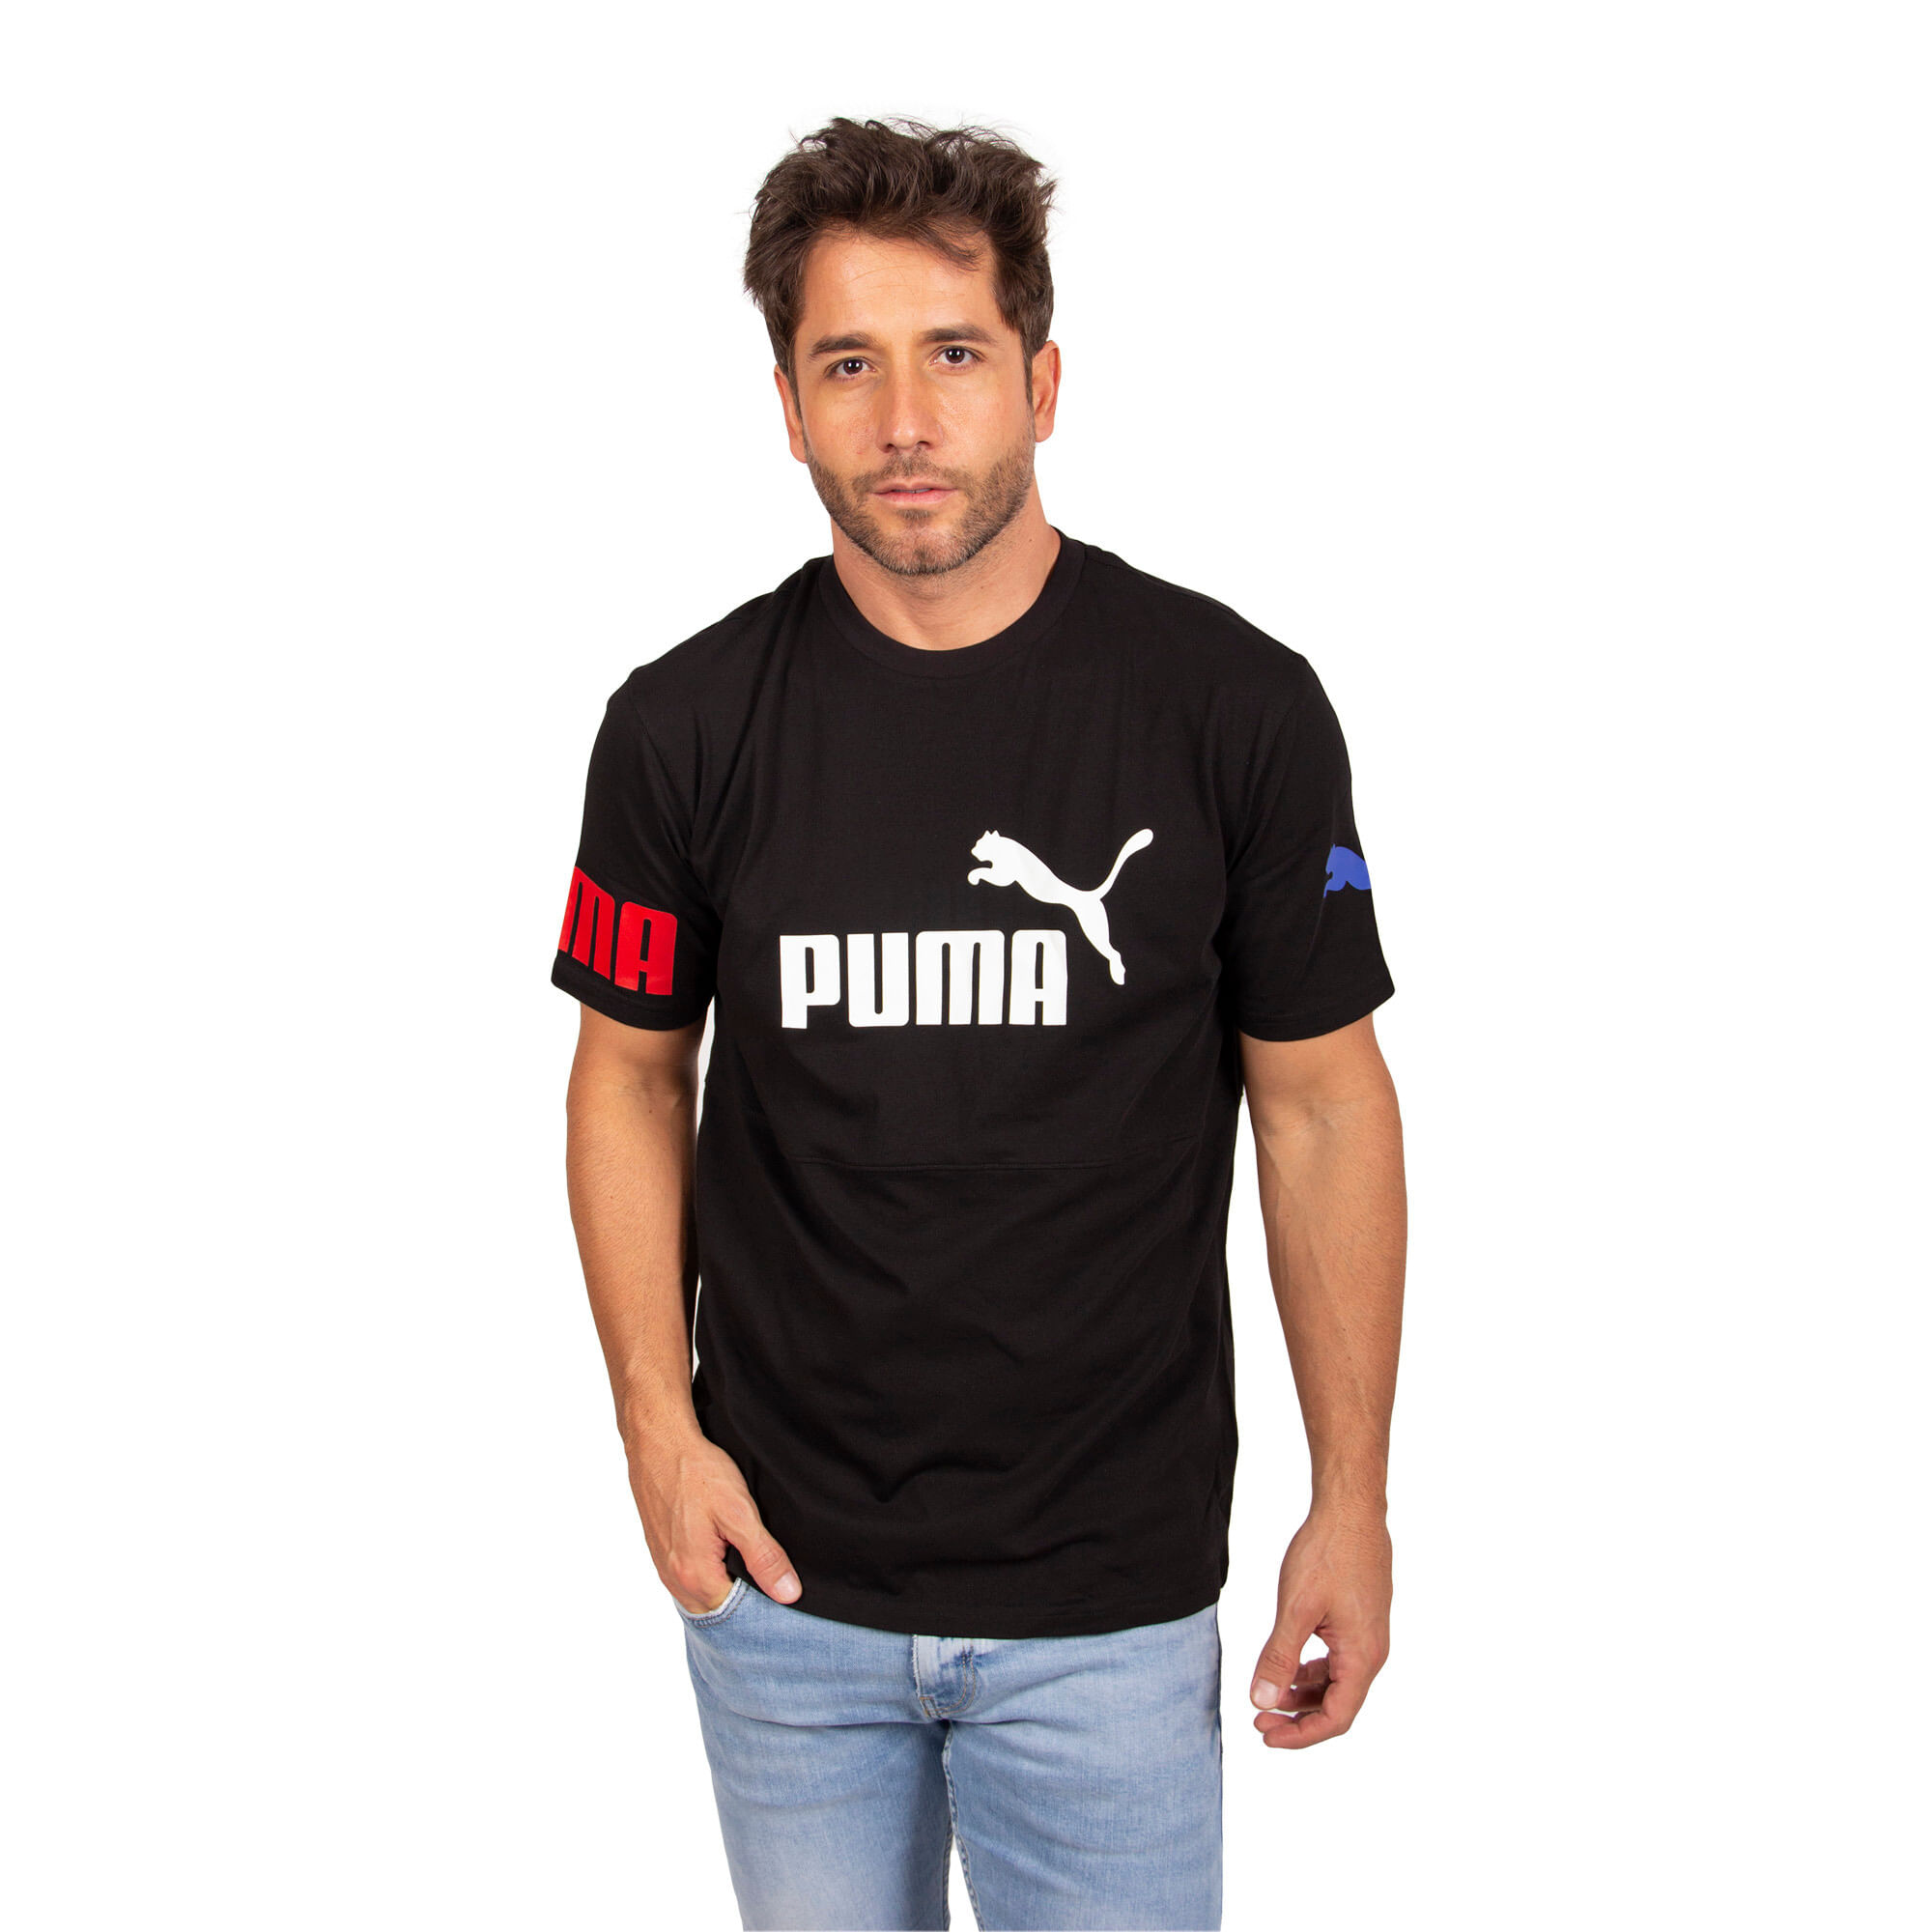 Camiseta Puma hombre: B67996820 ALEMAUTOS